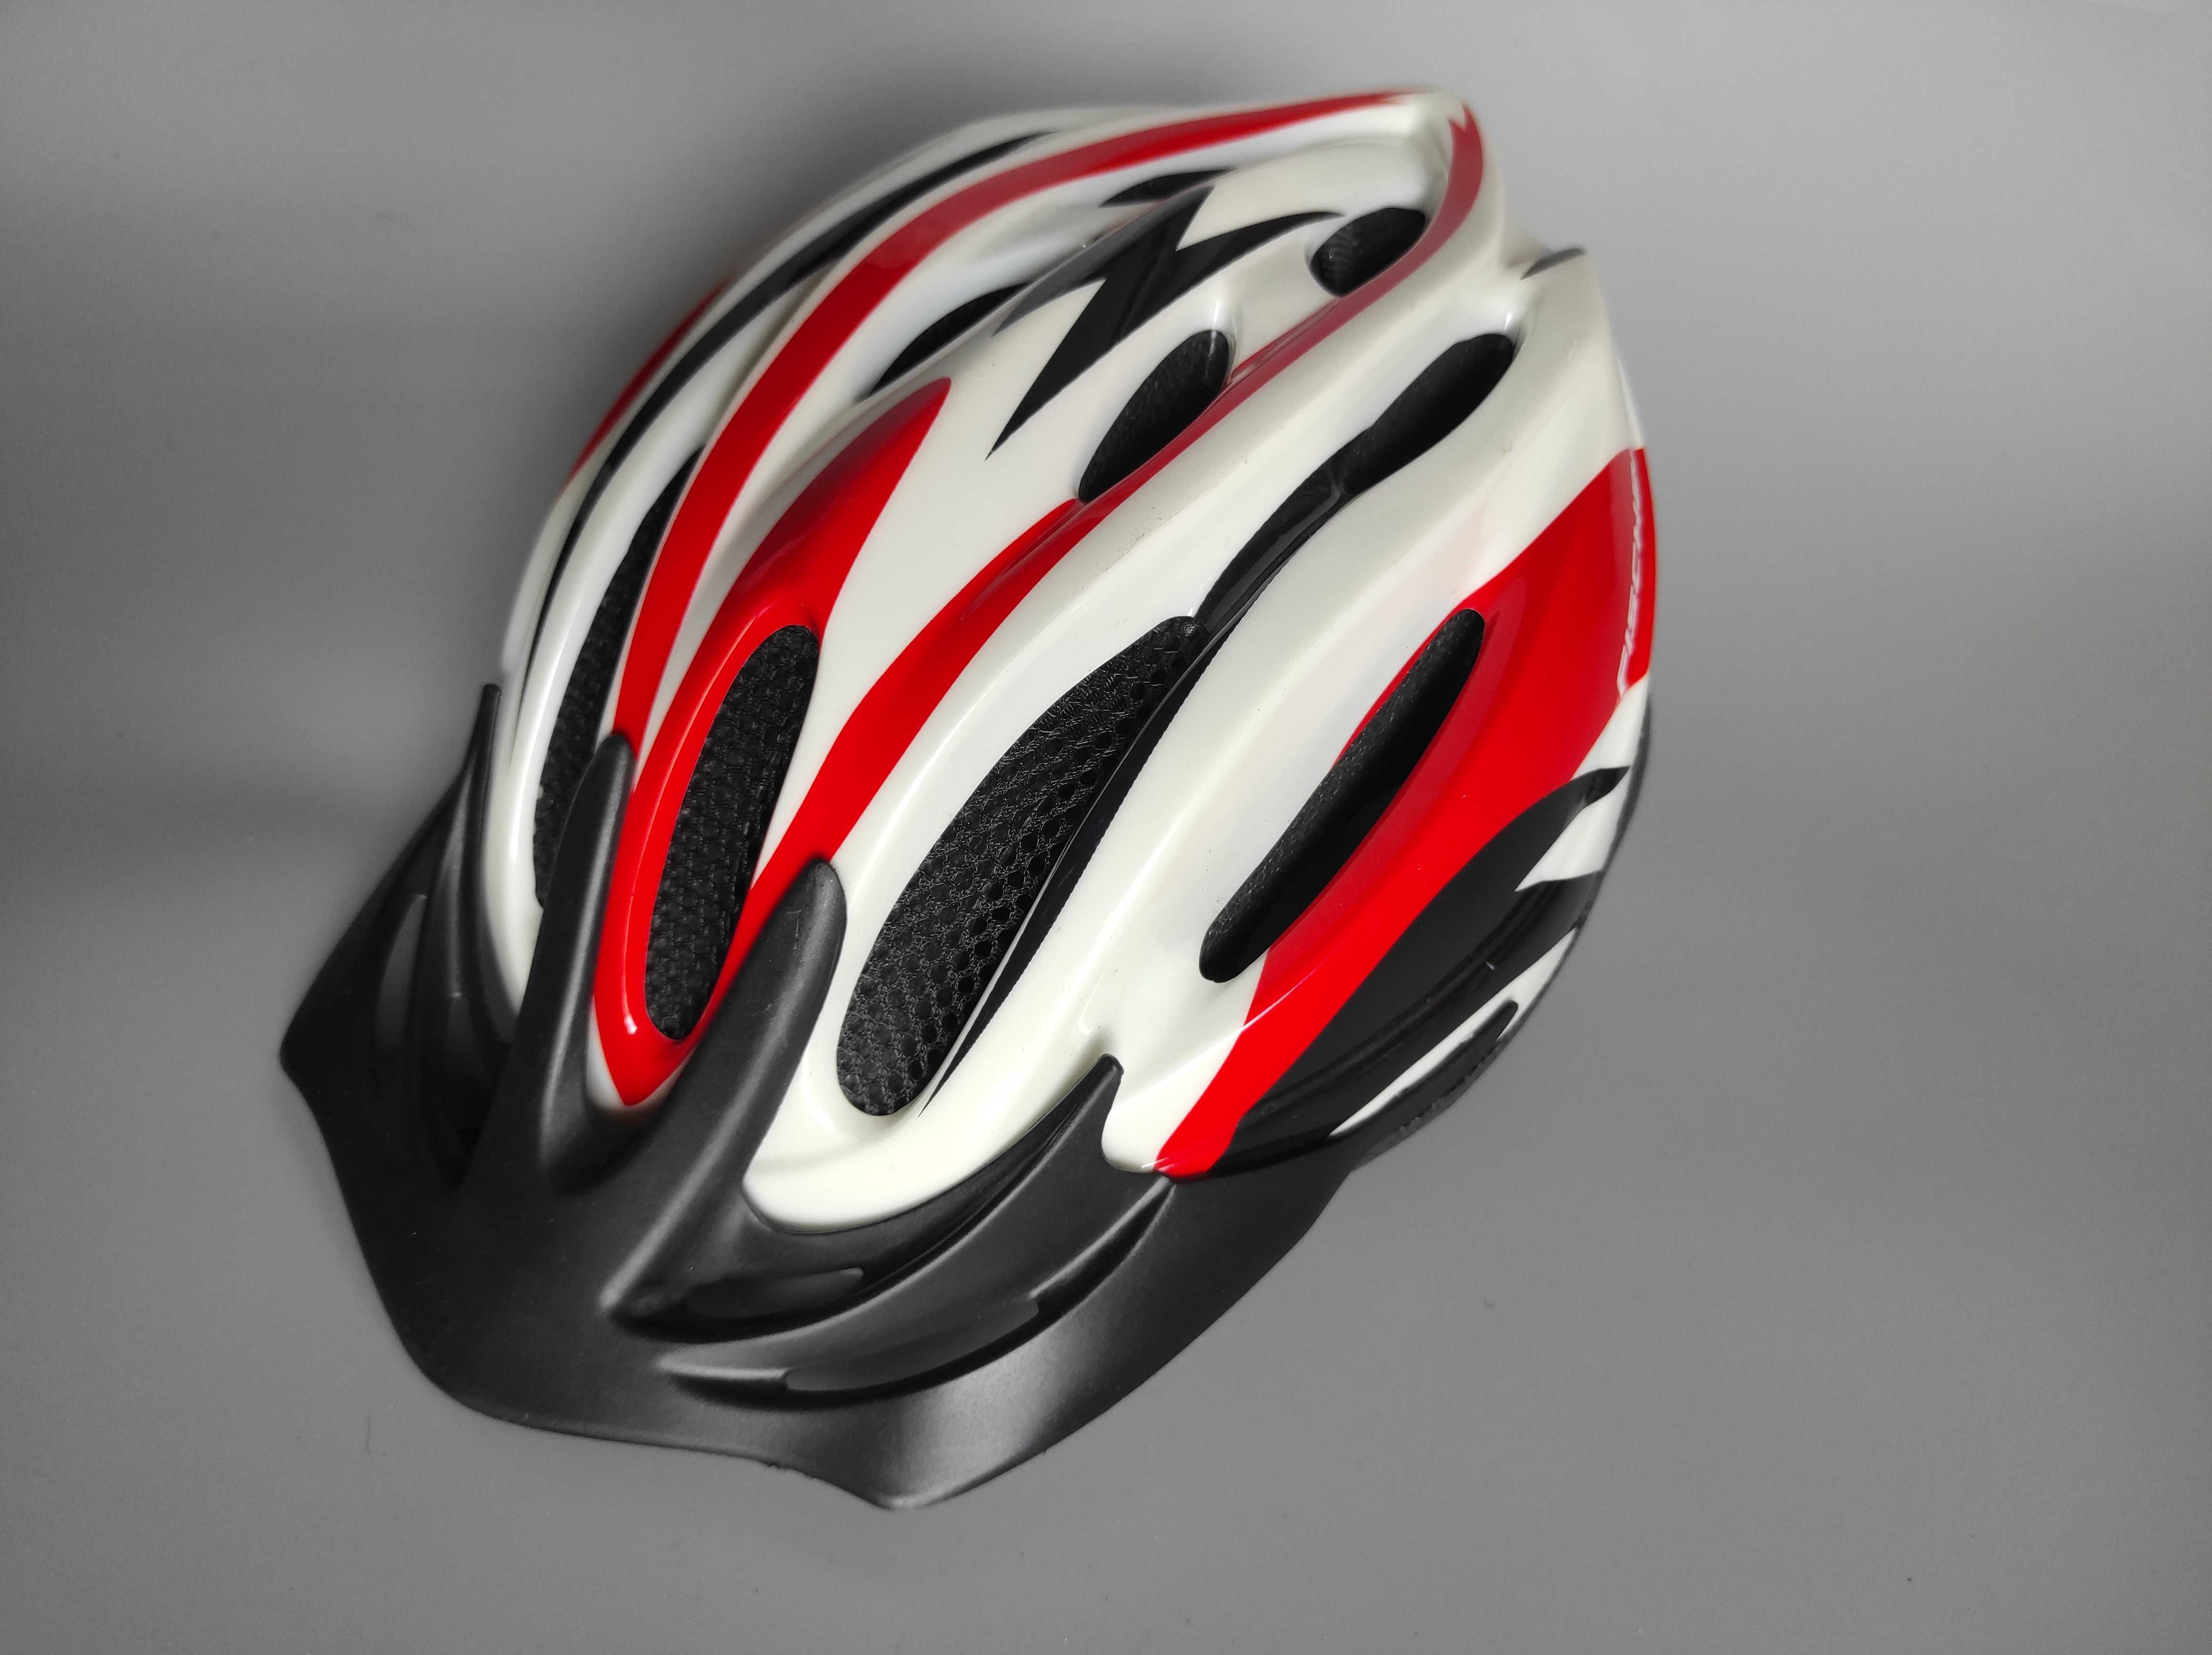 Шлем защитный Fischer, размер 52-57см, велосипедный, Германия.